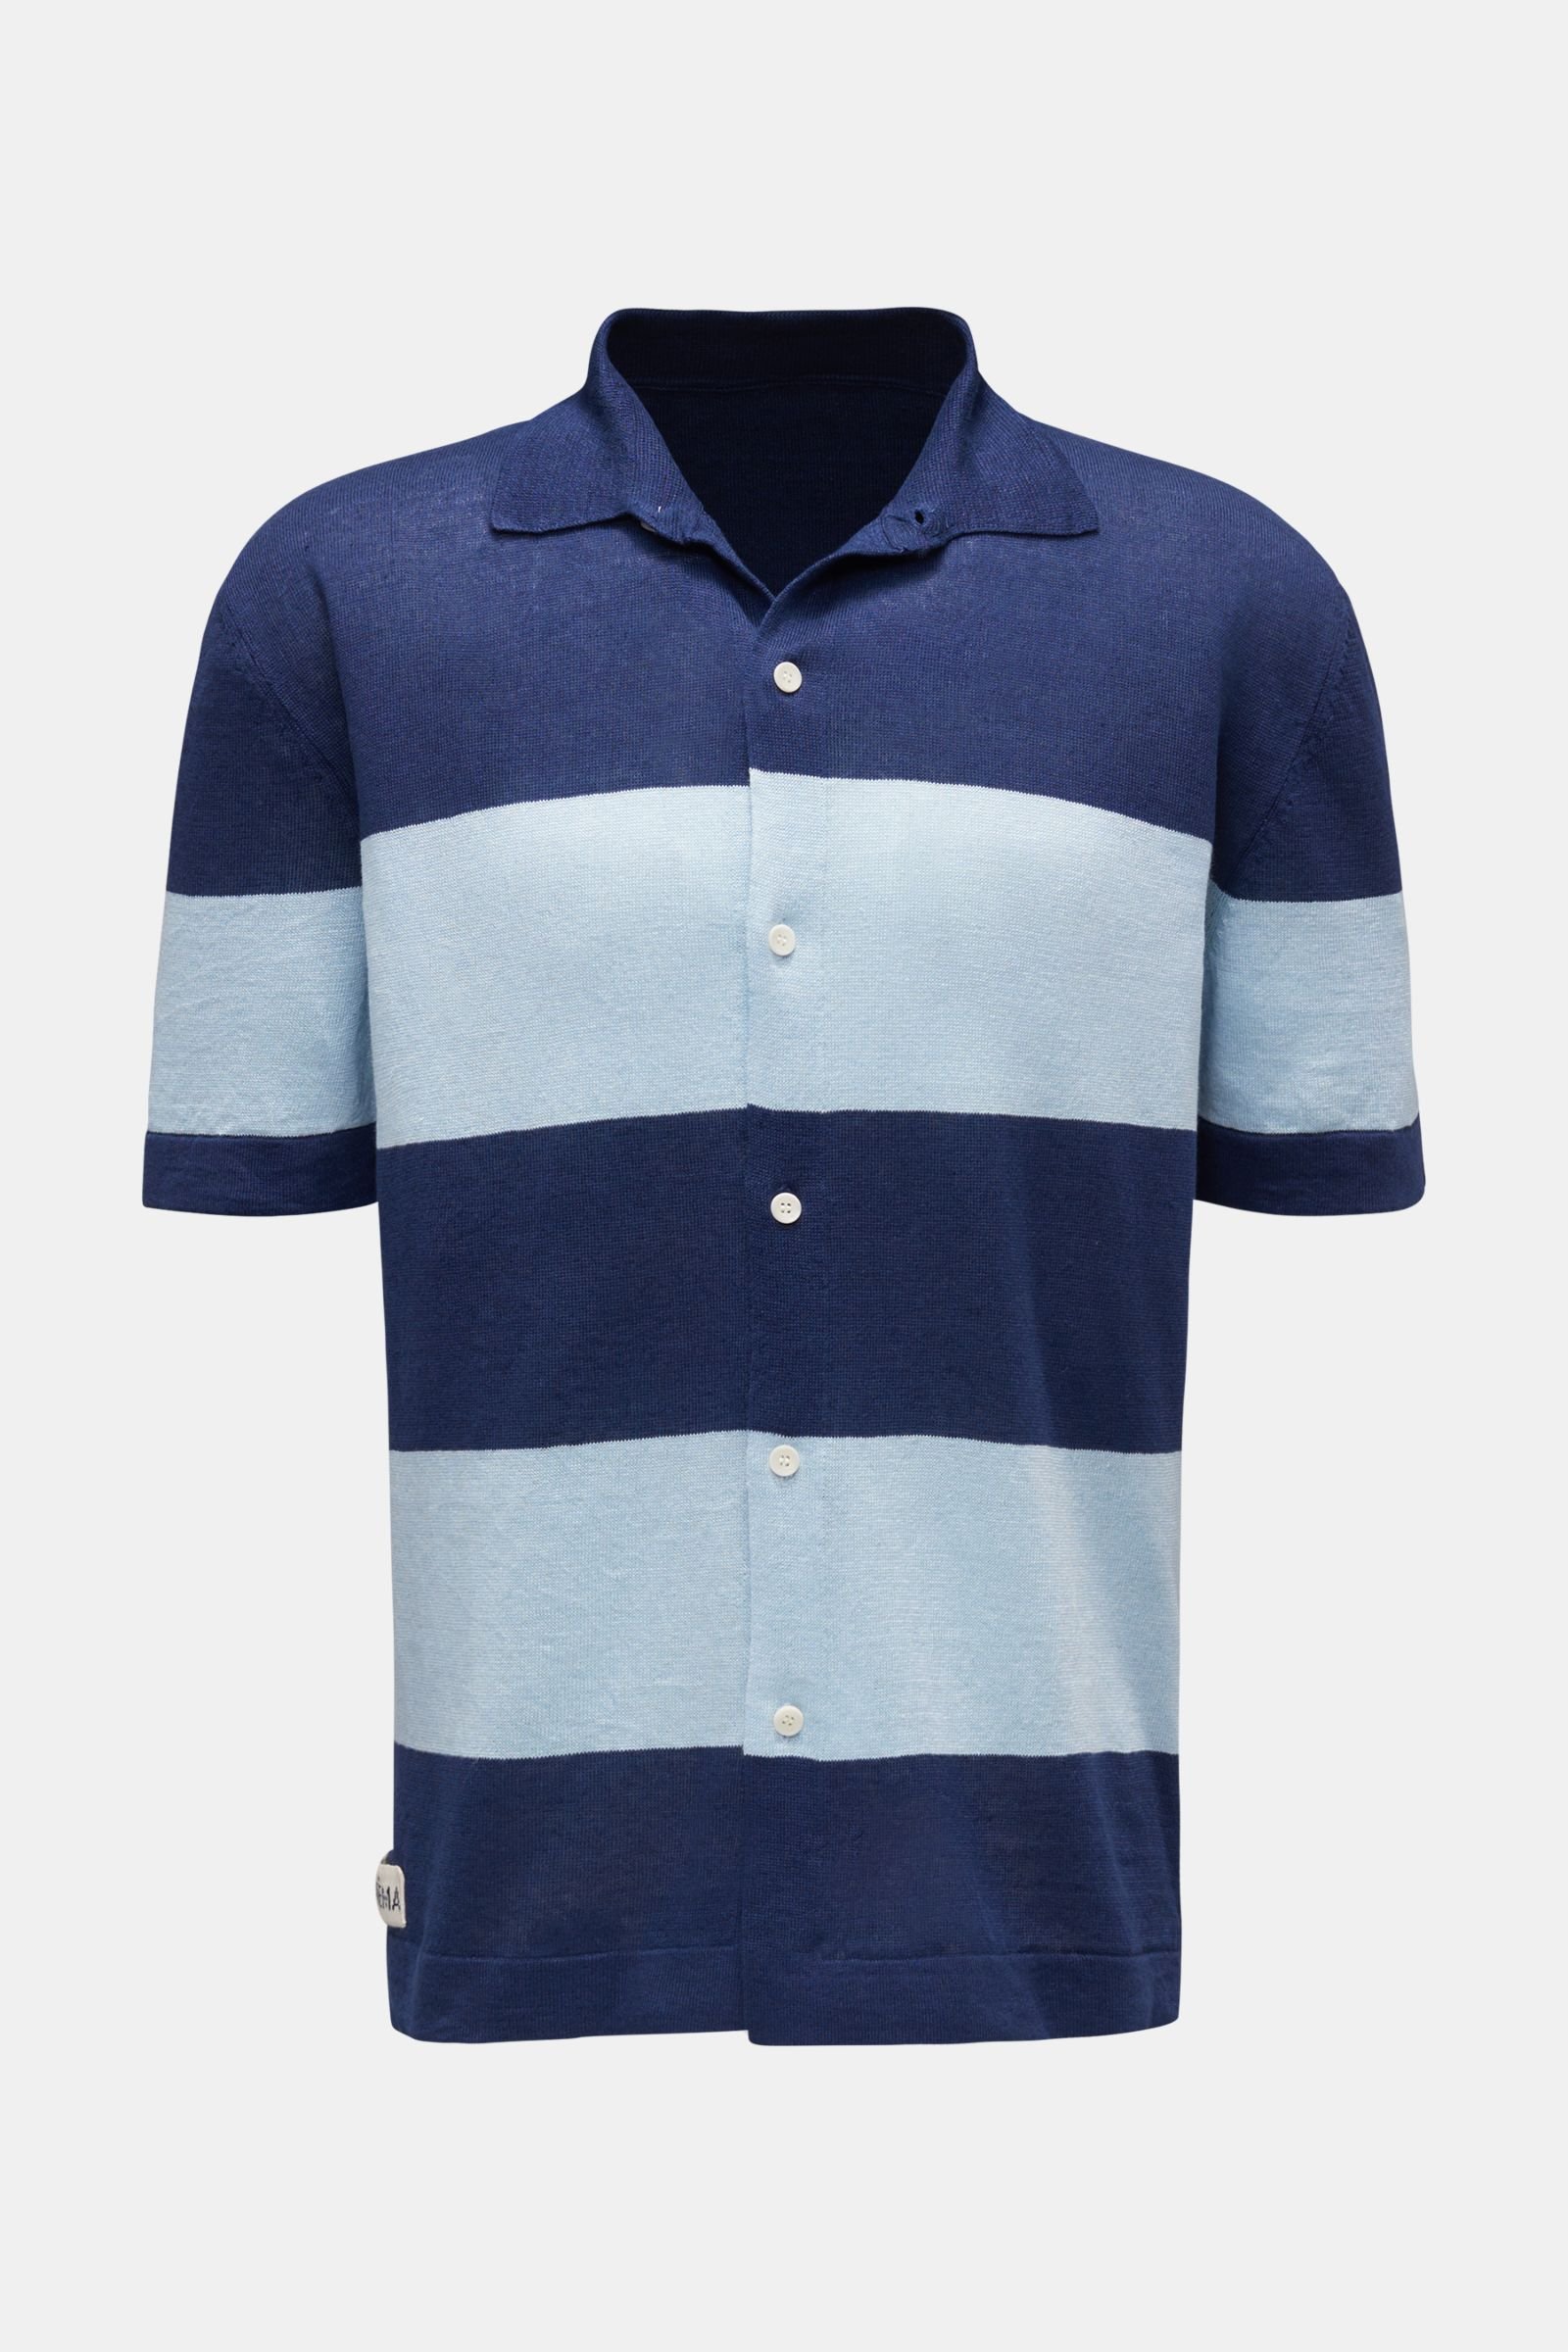 Linen short sleeve knit shirt narrow collar navy/light blue striped